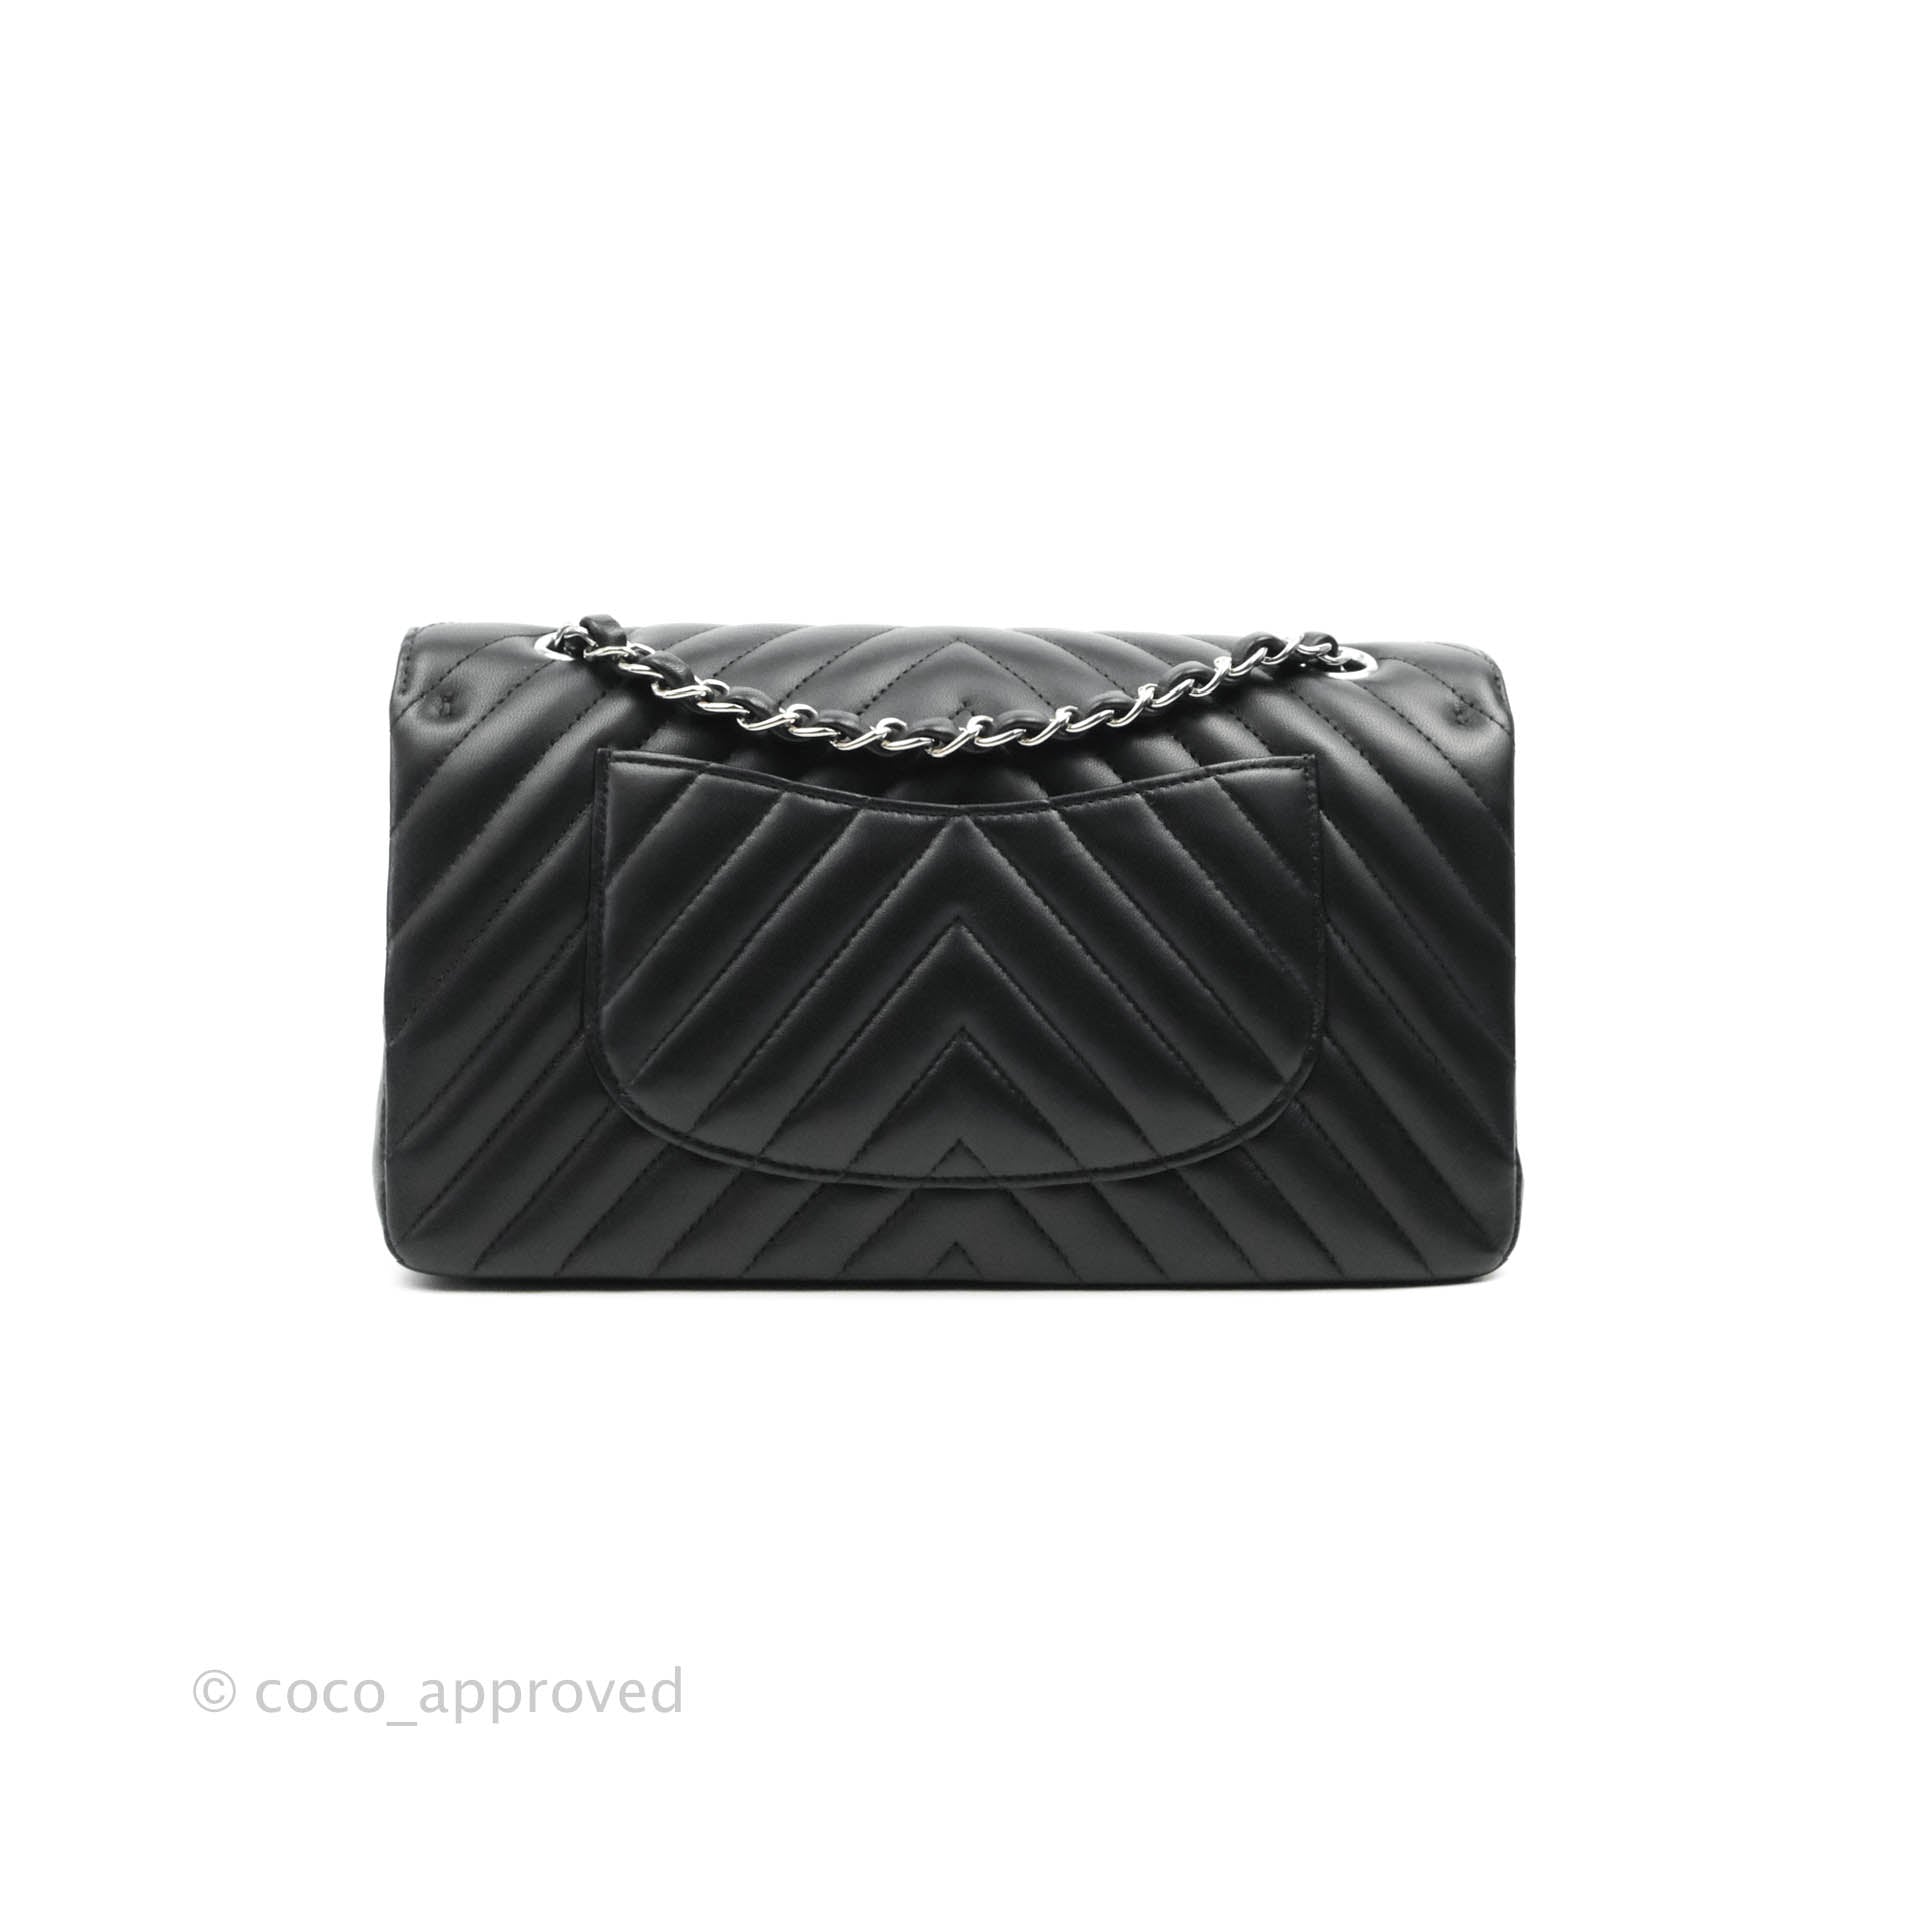 Vintage Chanel Classic Medium Double Flap Bag Black Chevron